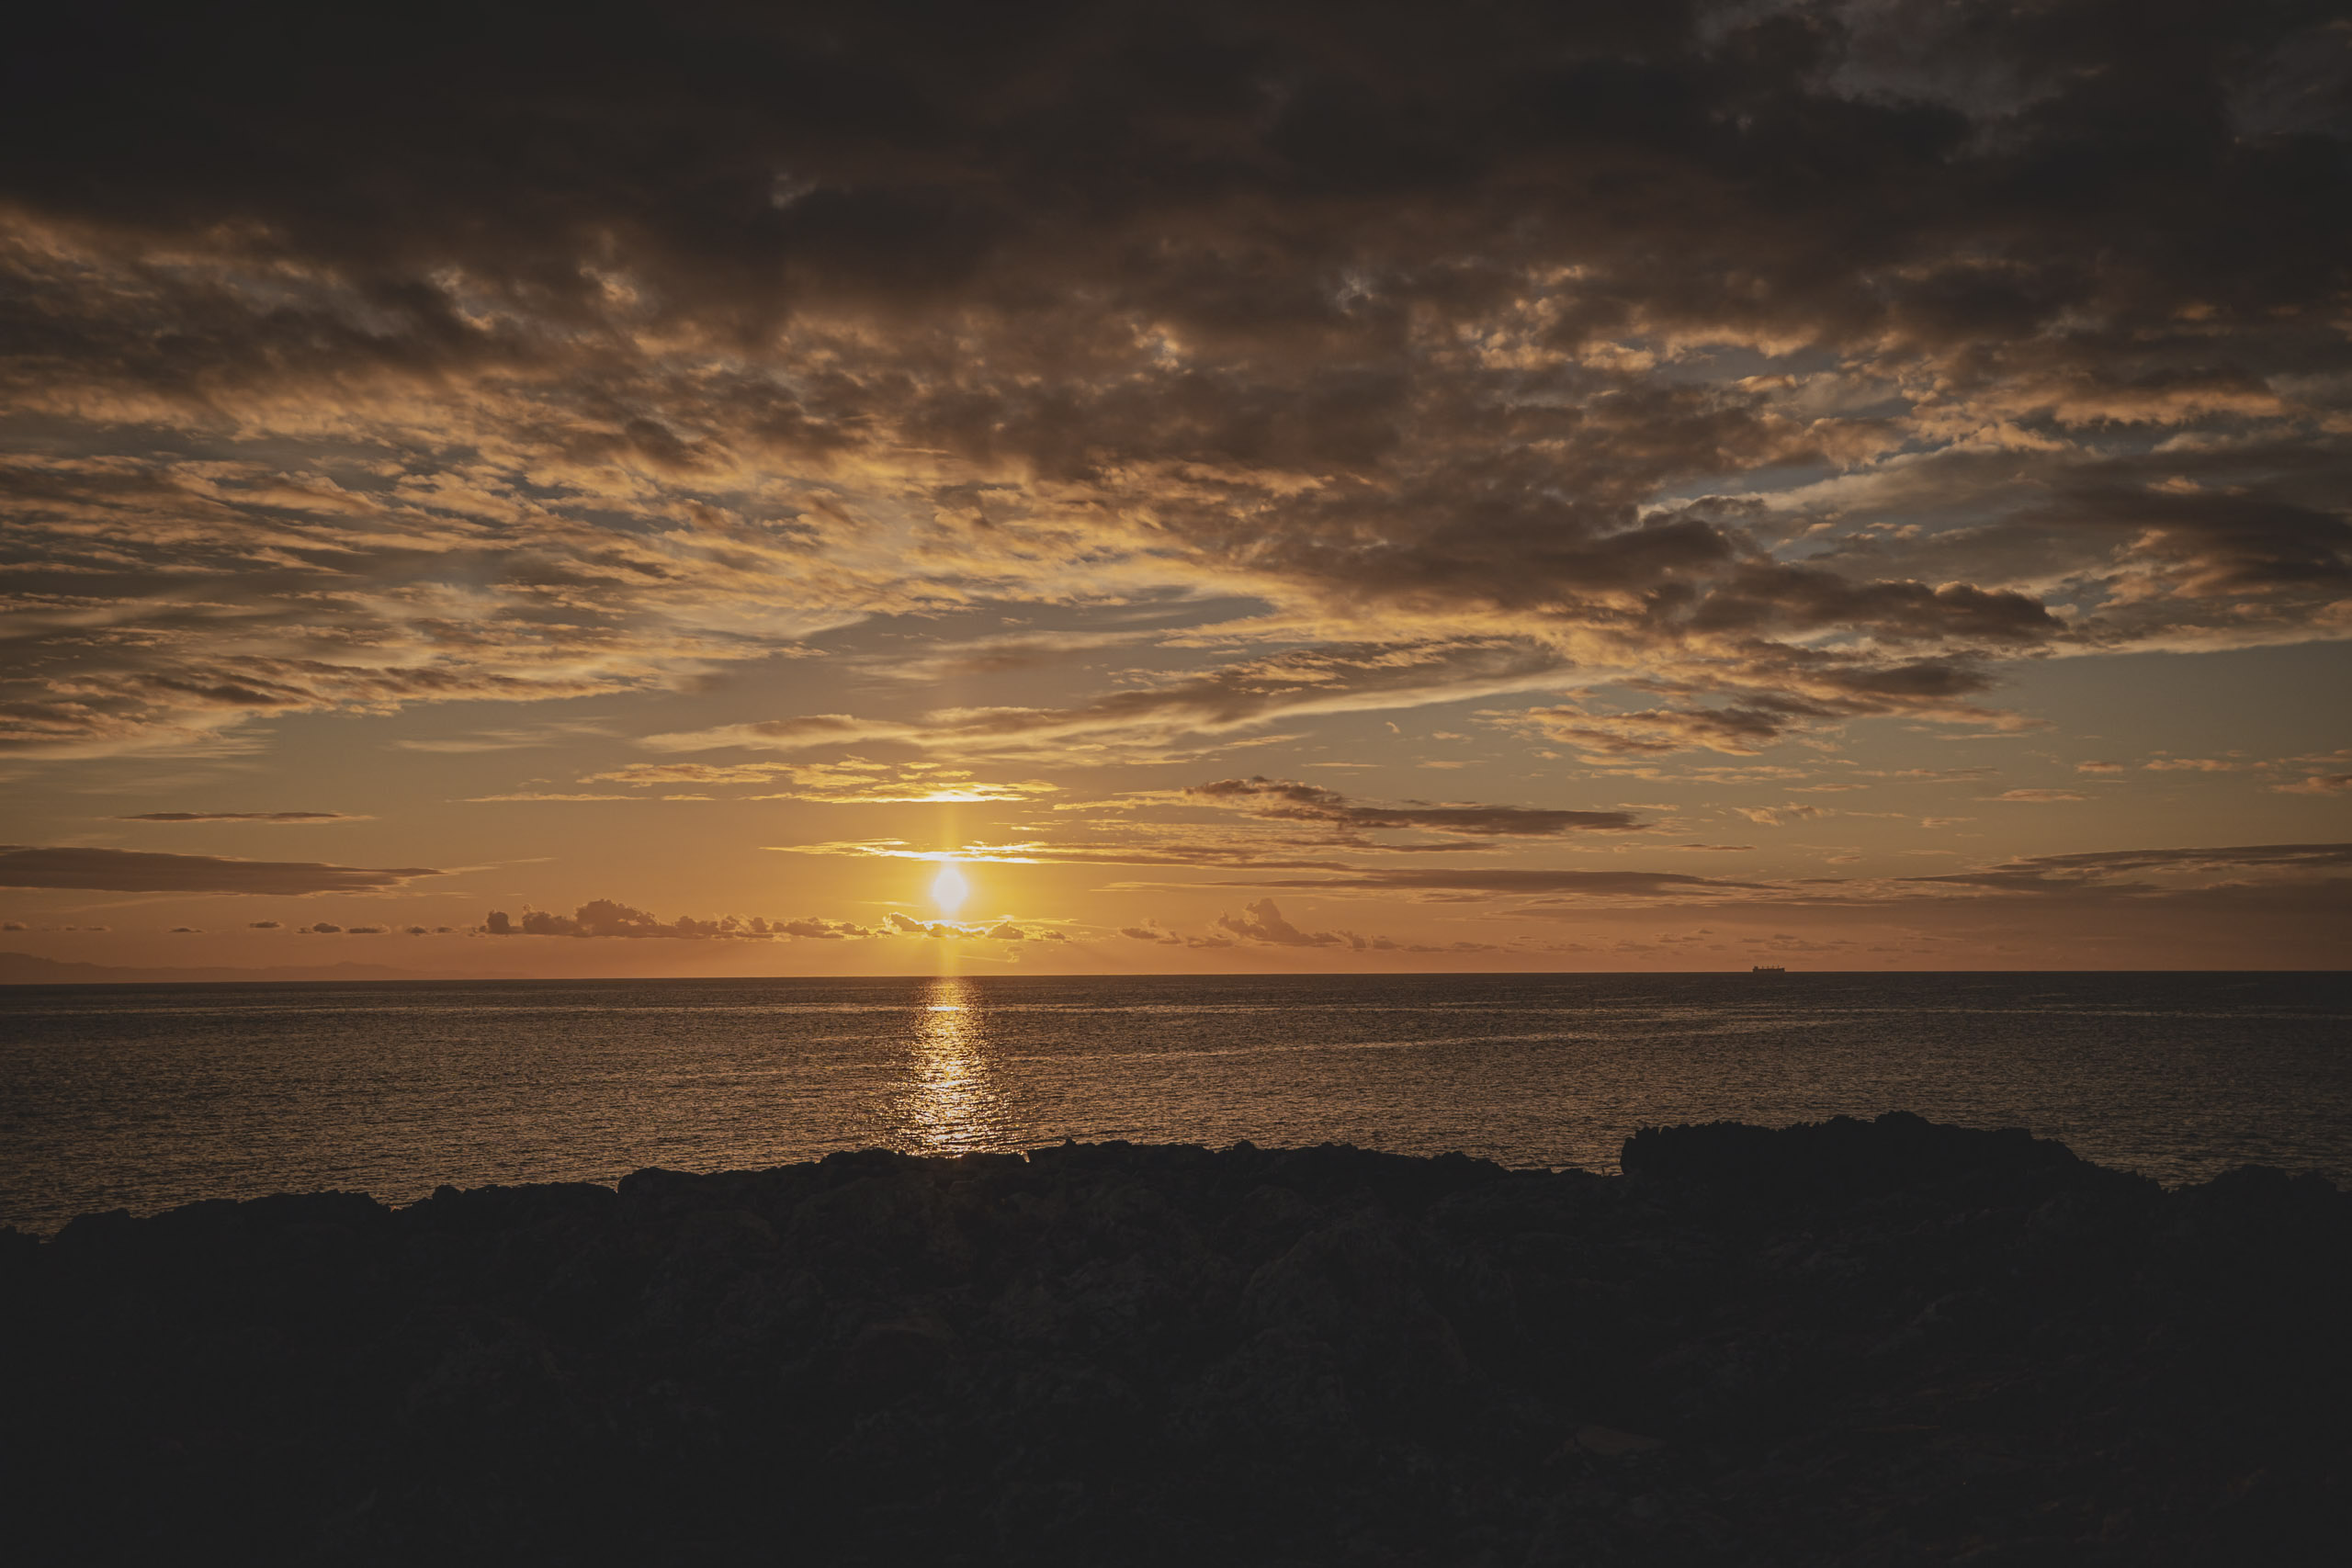 Ein dramatischer Sonnenuntergang über dem Meer, die Sonne steht tief am Horizont und wirft einen warmen Schein unter einen Himmel voller dunkler, strukturierter Wolken, betrachtet von einer felsigen Küste. © Fotografie Tomas Rodriguez